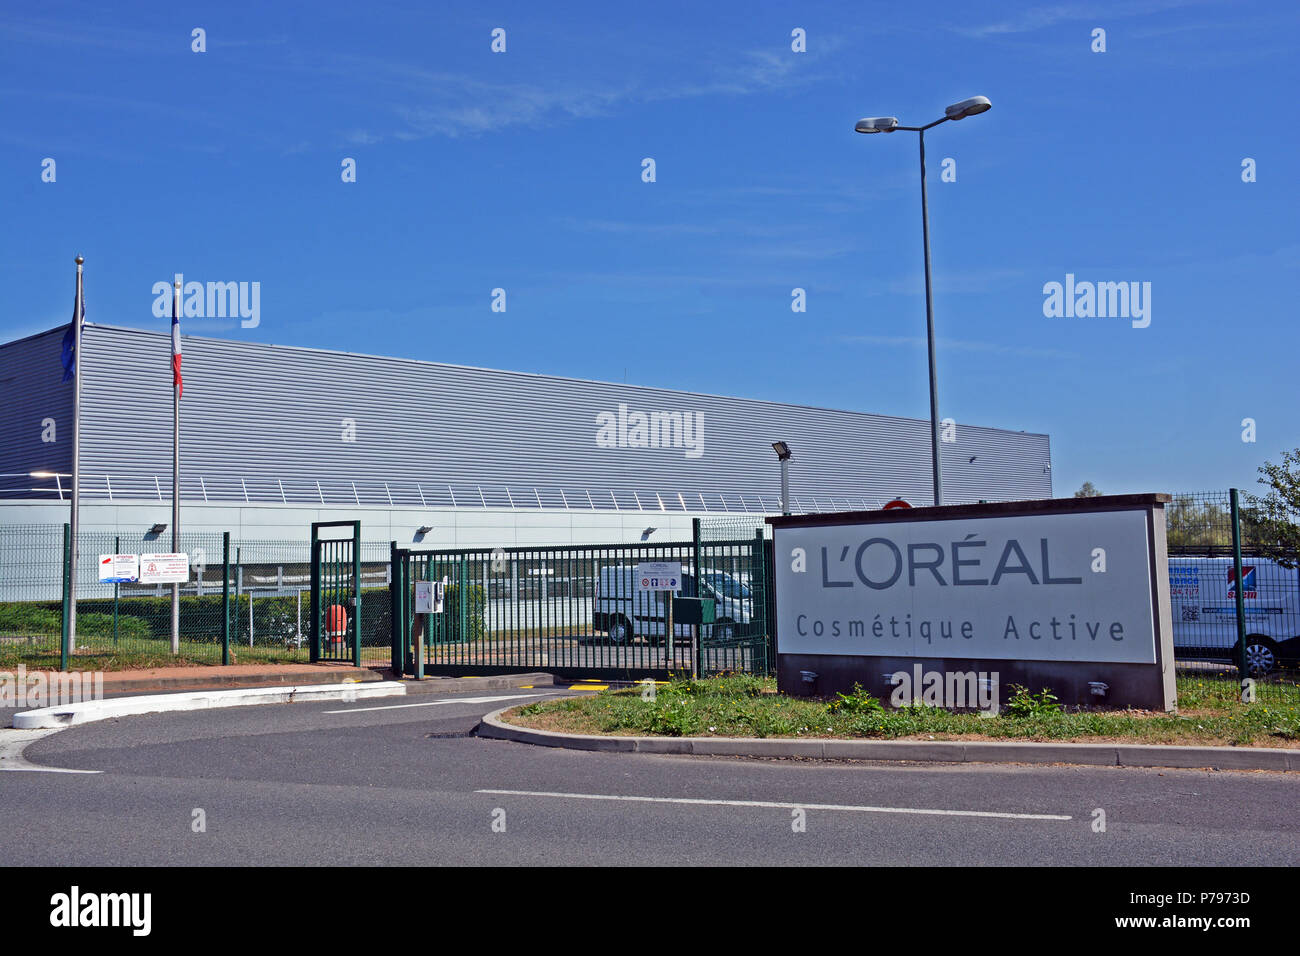 L’Oreal Cosmétique active factory, Zone Industrielle de Vichy Rhue, Creuzier le Vieux, Allier, Auvergne, Massif-Central, France Stock Photo